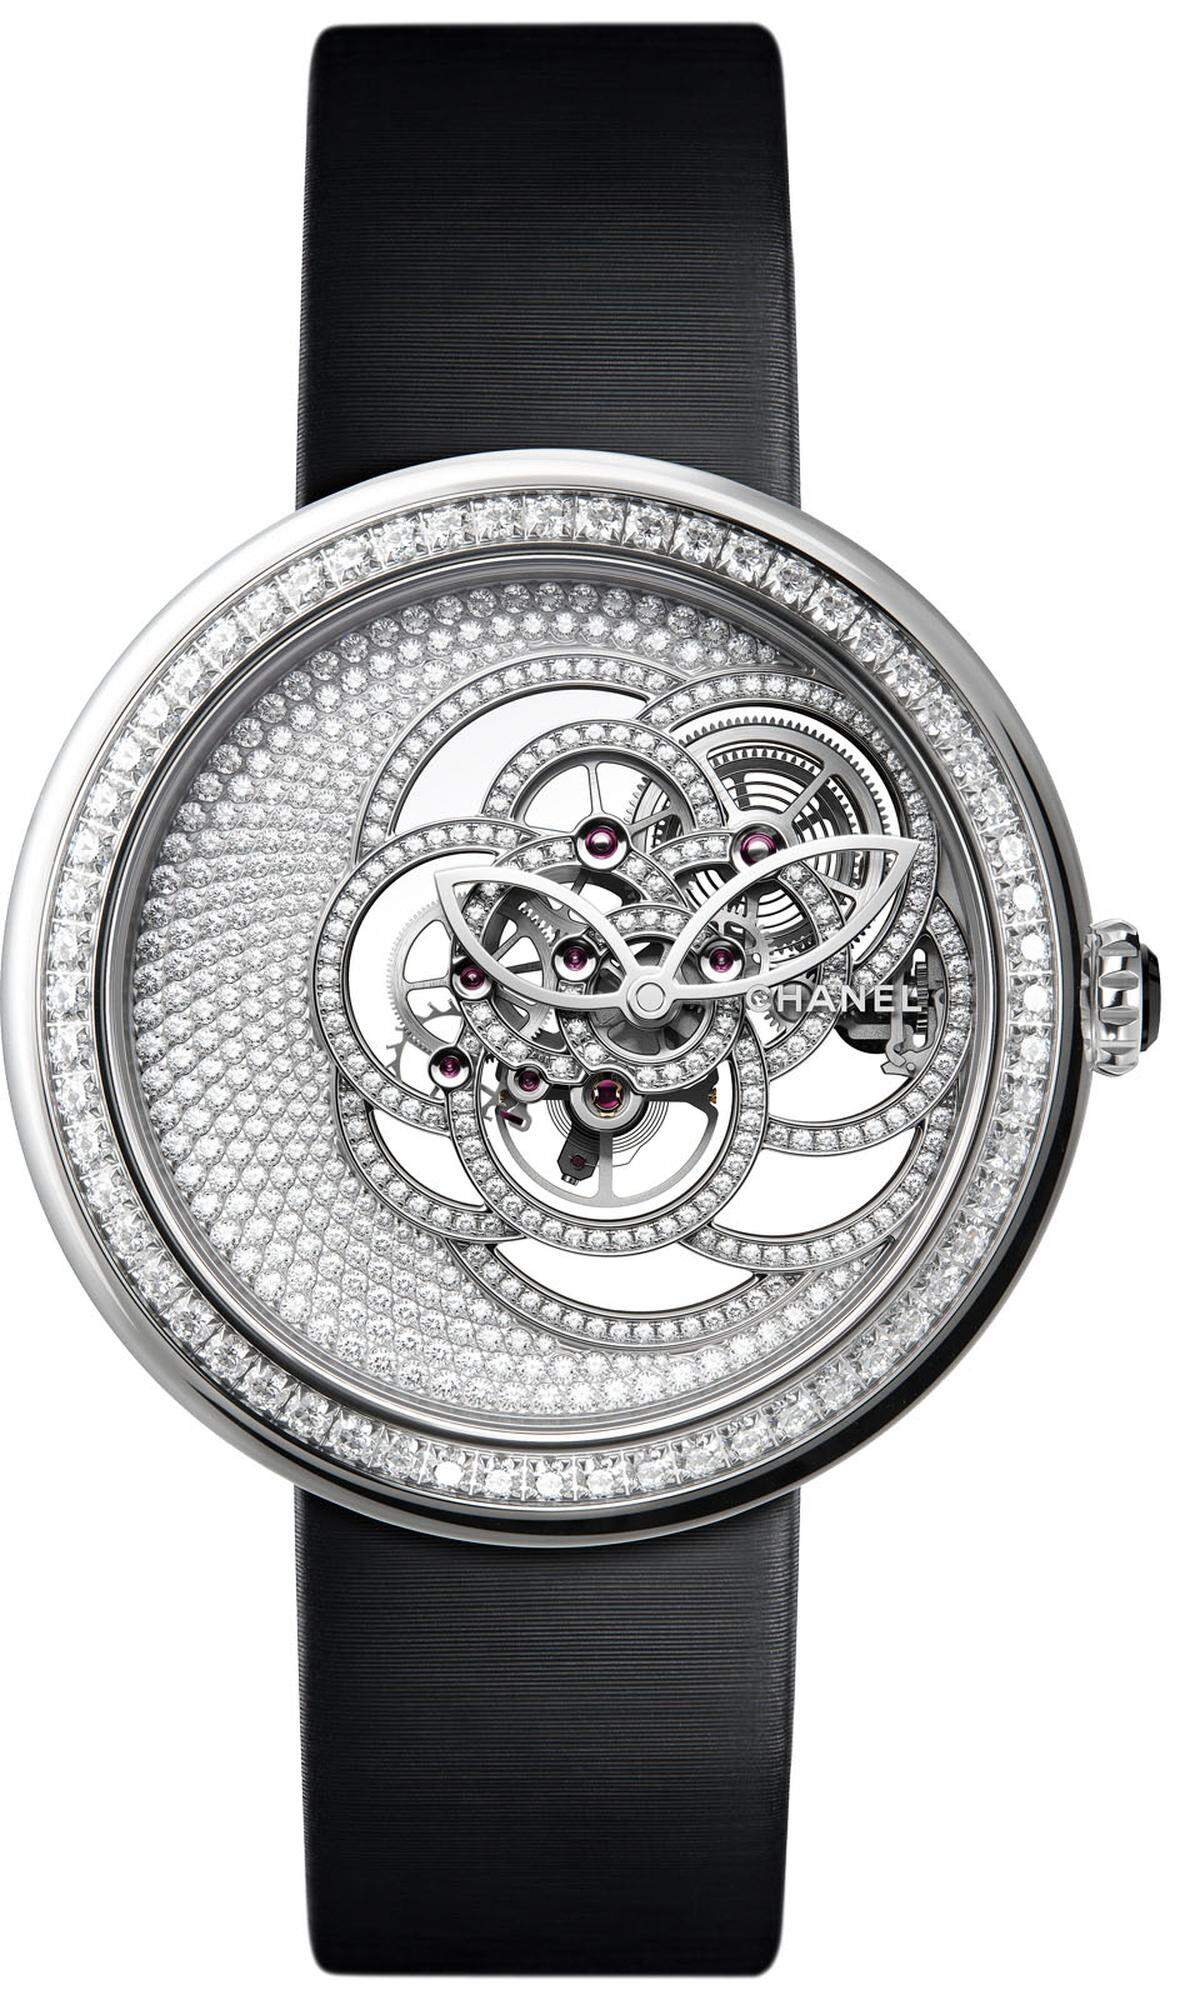 „Mademoiselle Privé“ heißt die Schmuck-Uhren-Kollektion von Chanel, die 2018 zum ersten Mal mit einem Haute-Horlogerie-Uhrwerk, dem Kaliber 2.1 Squelette Camélia, ausgestattet wird. Das Kamelien-Skelett ist mit 185 Diamanten im Brillantschliff besetzt.